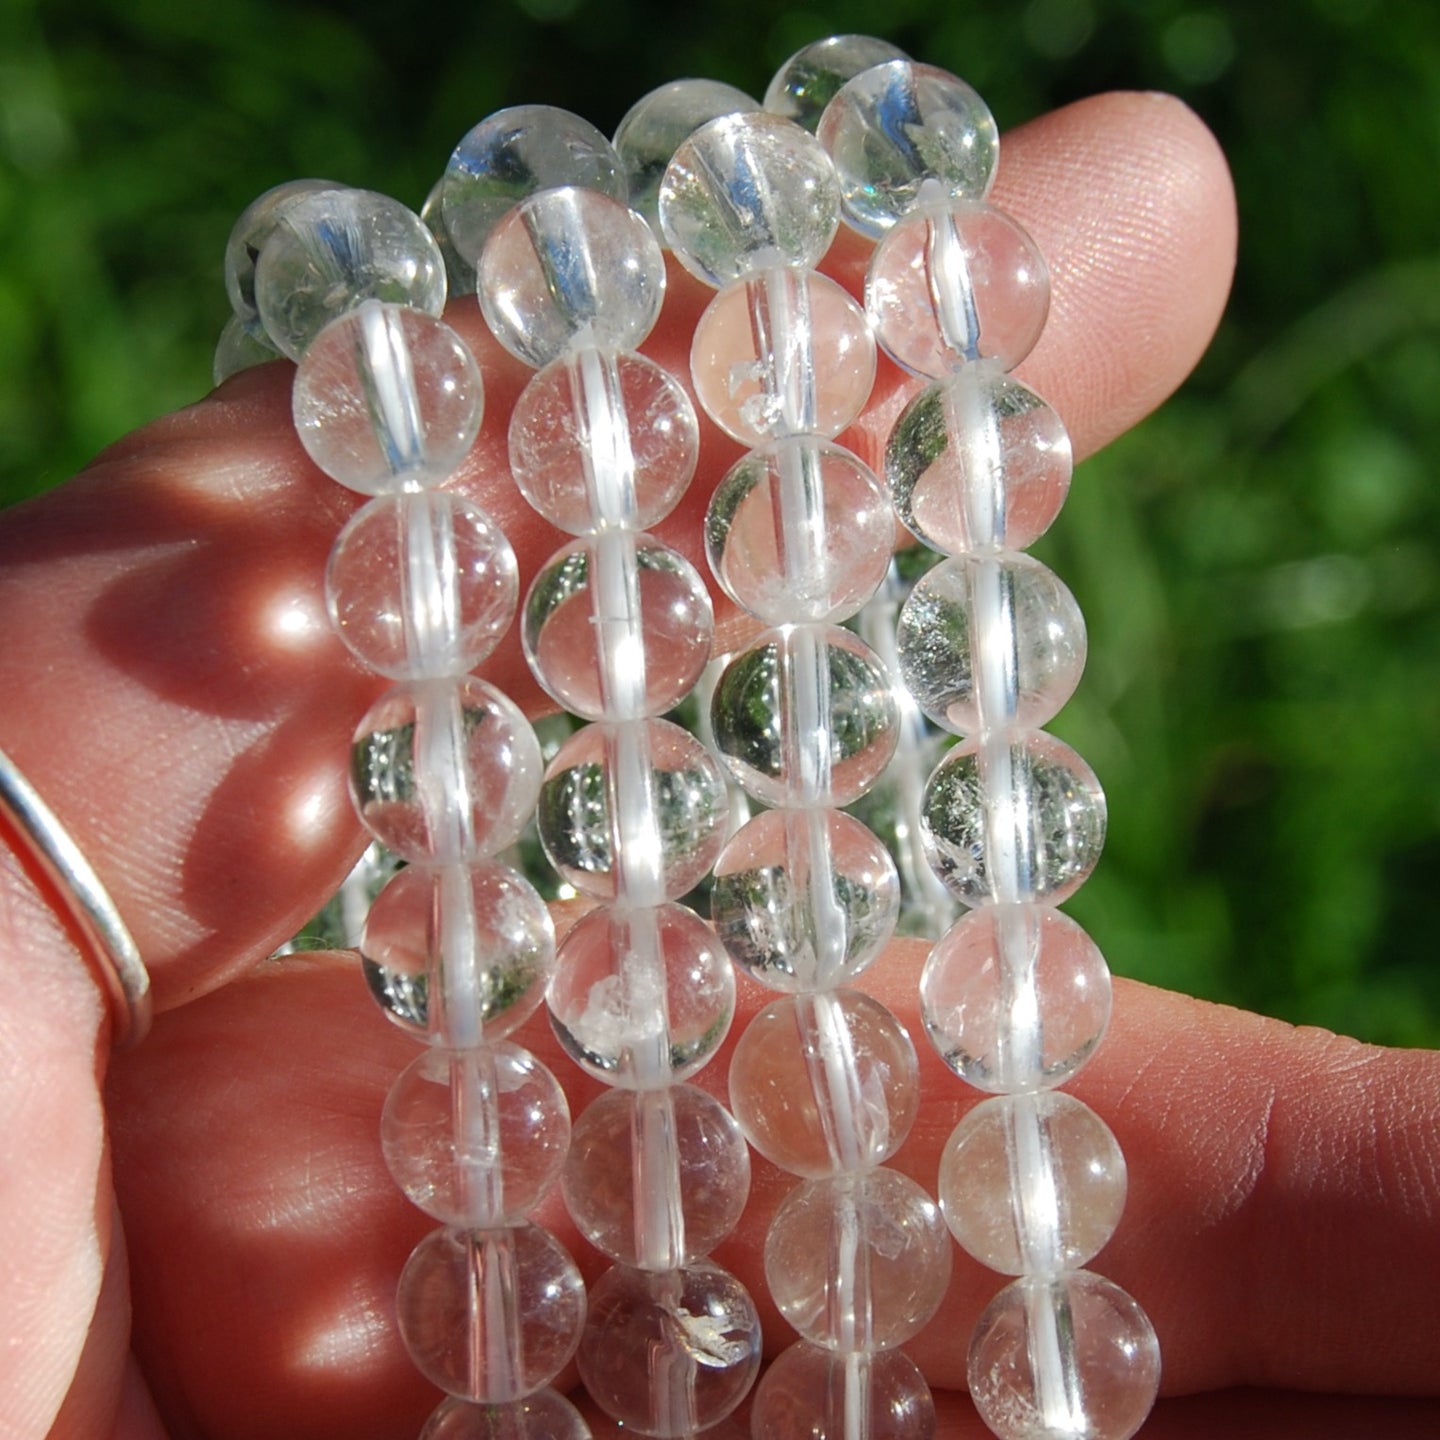 Clear Quartz Crystal Bracelet, 8mm Natural Gemstone Beads